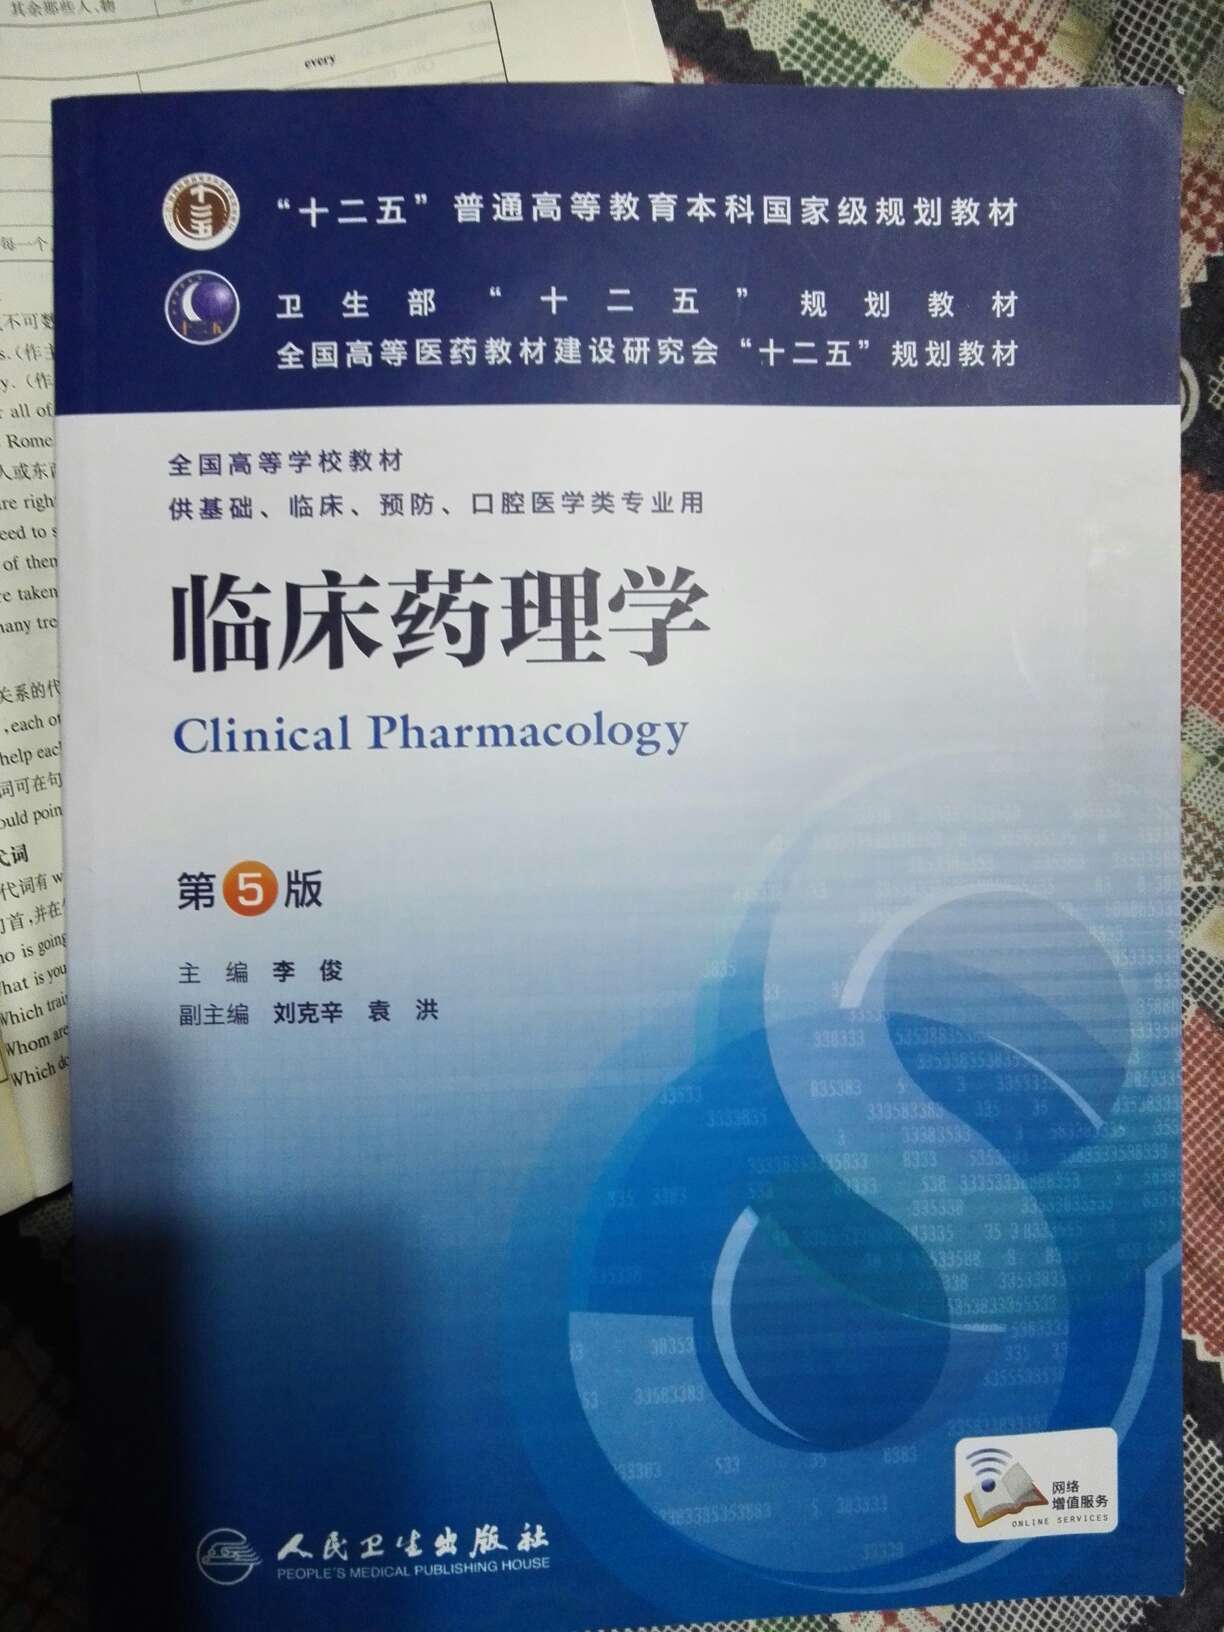 该书内容比较全面，对临床合理用药有一定的指导作用，适合从事临床药学的药师使用。寄过来的书有点脏。